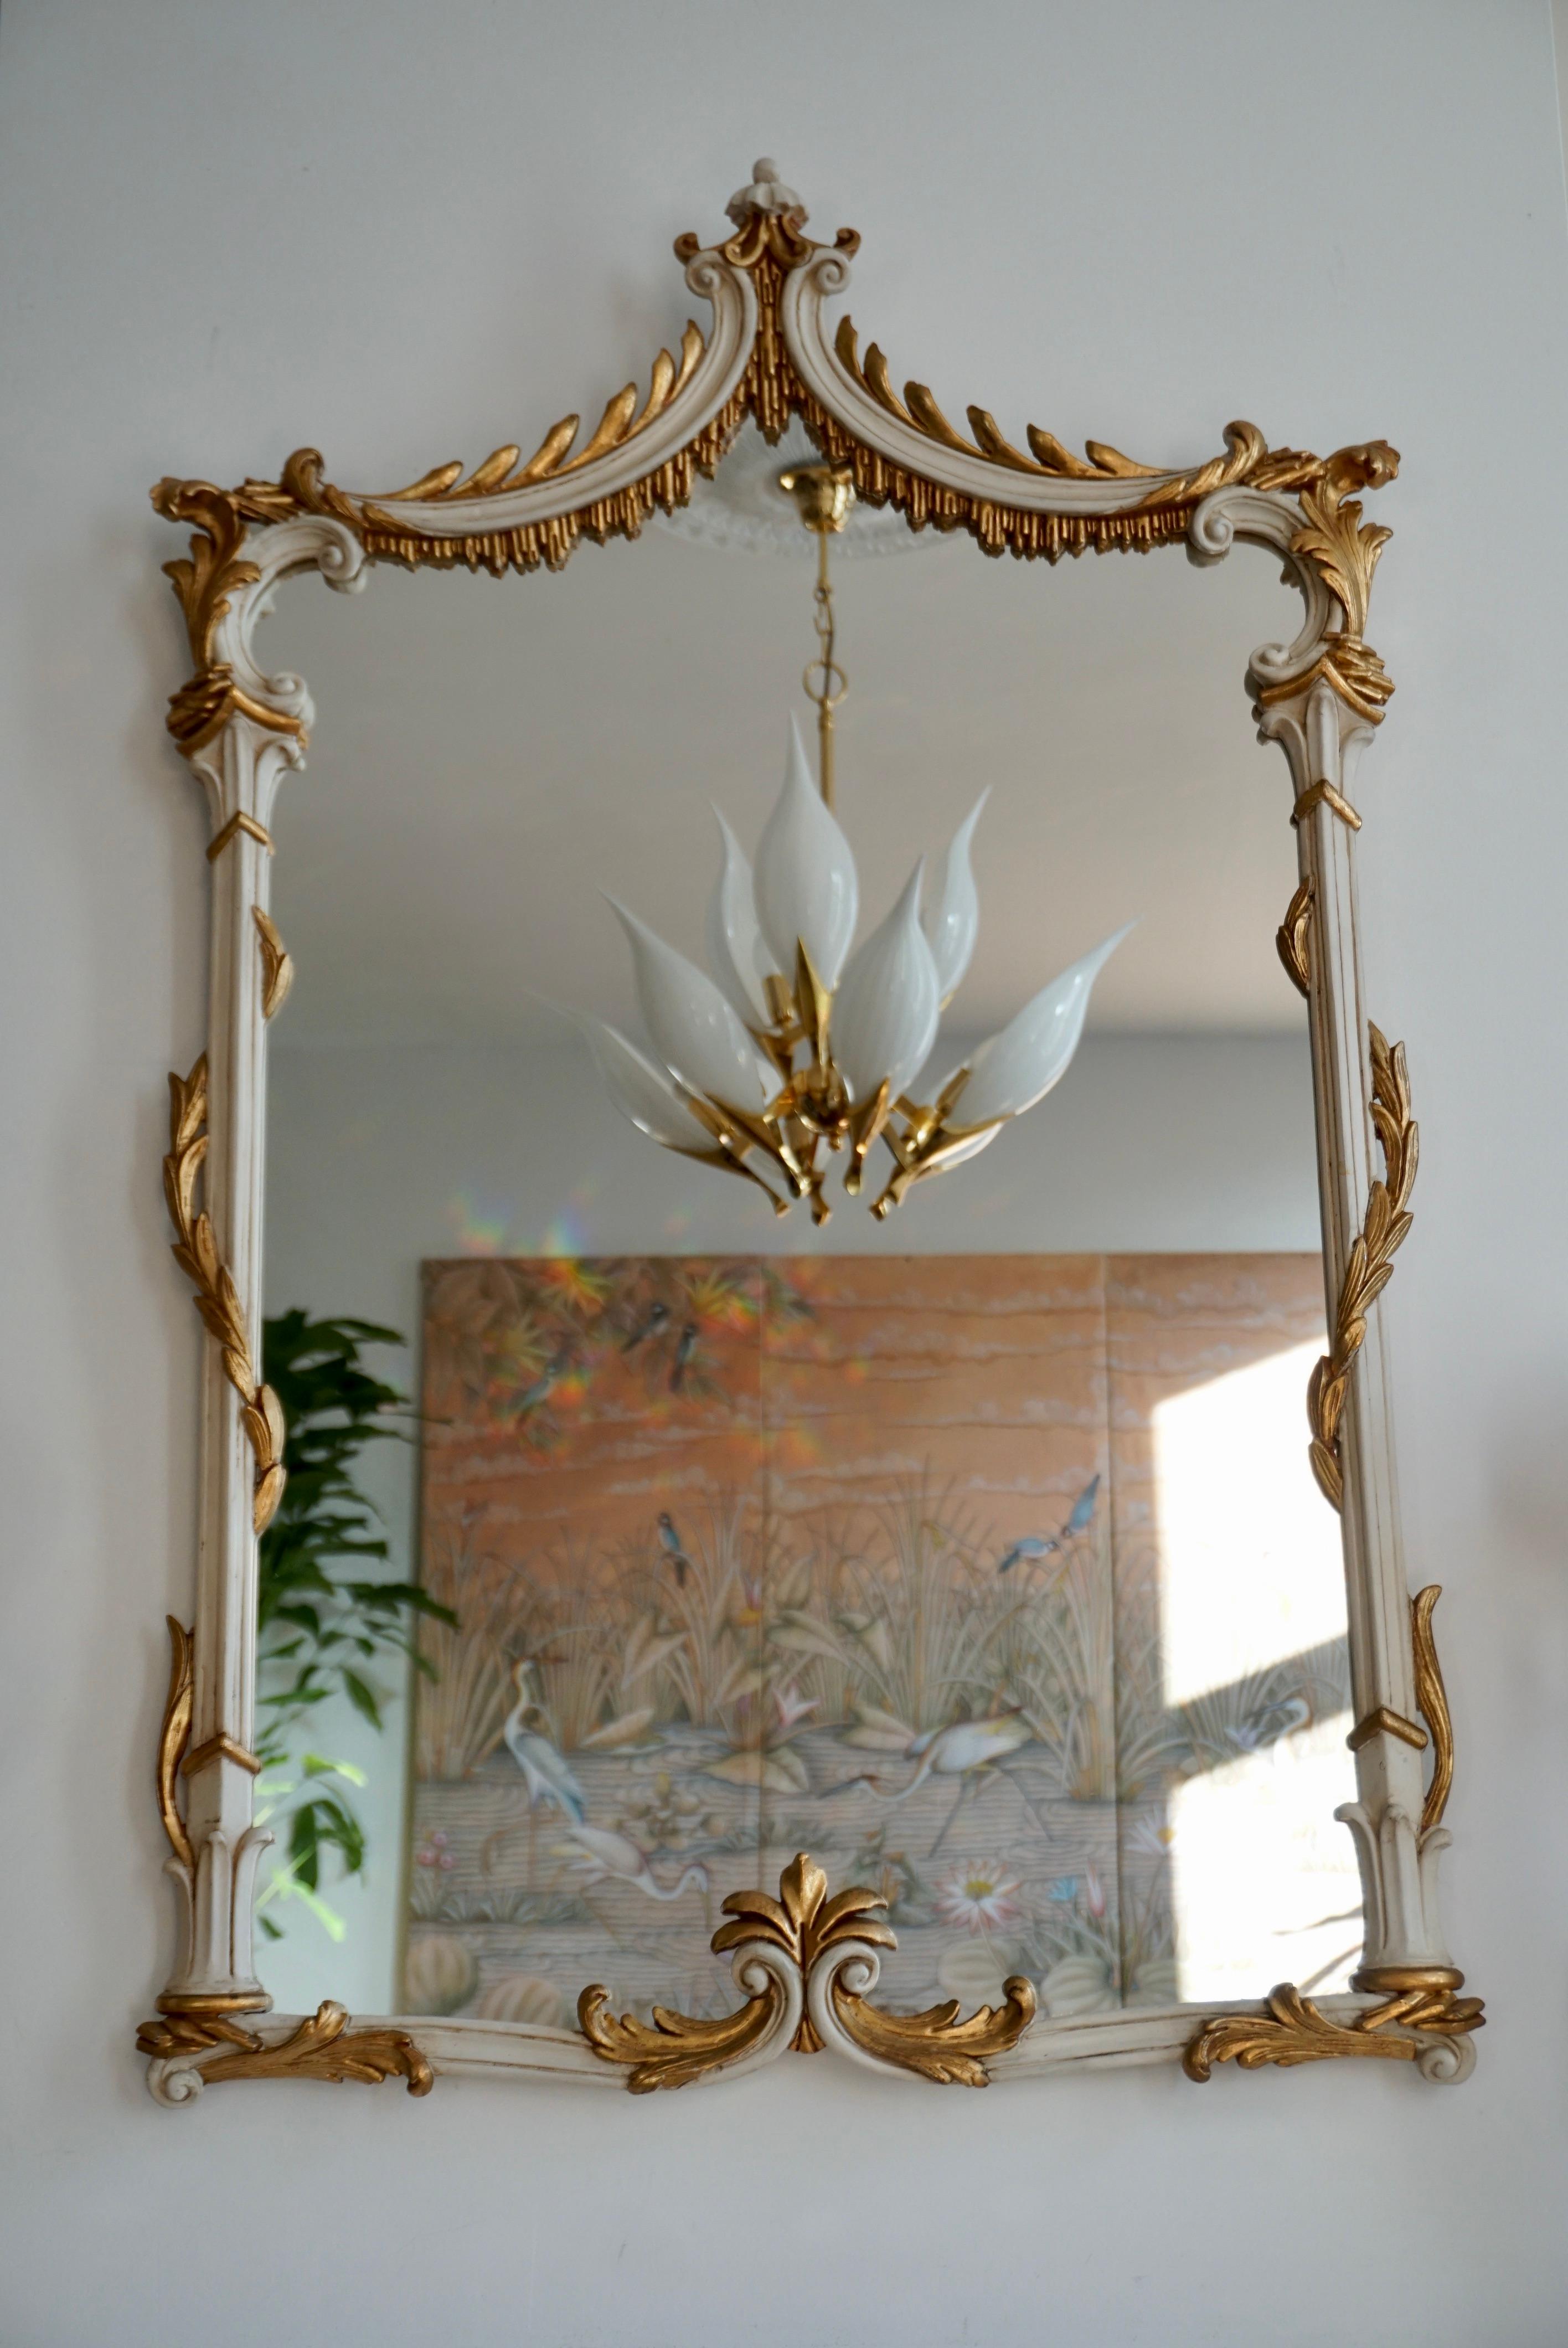 Schöner italienischer vergoldeter Spiegel im Rokokostil.

Höhe 47